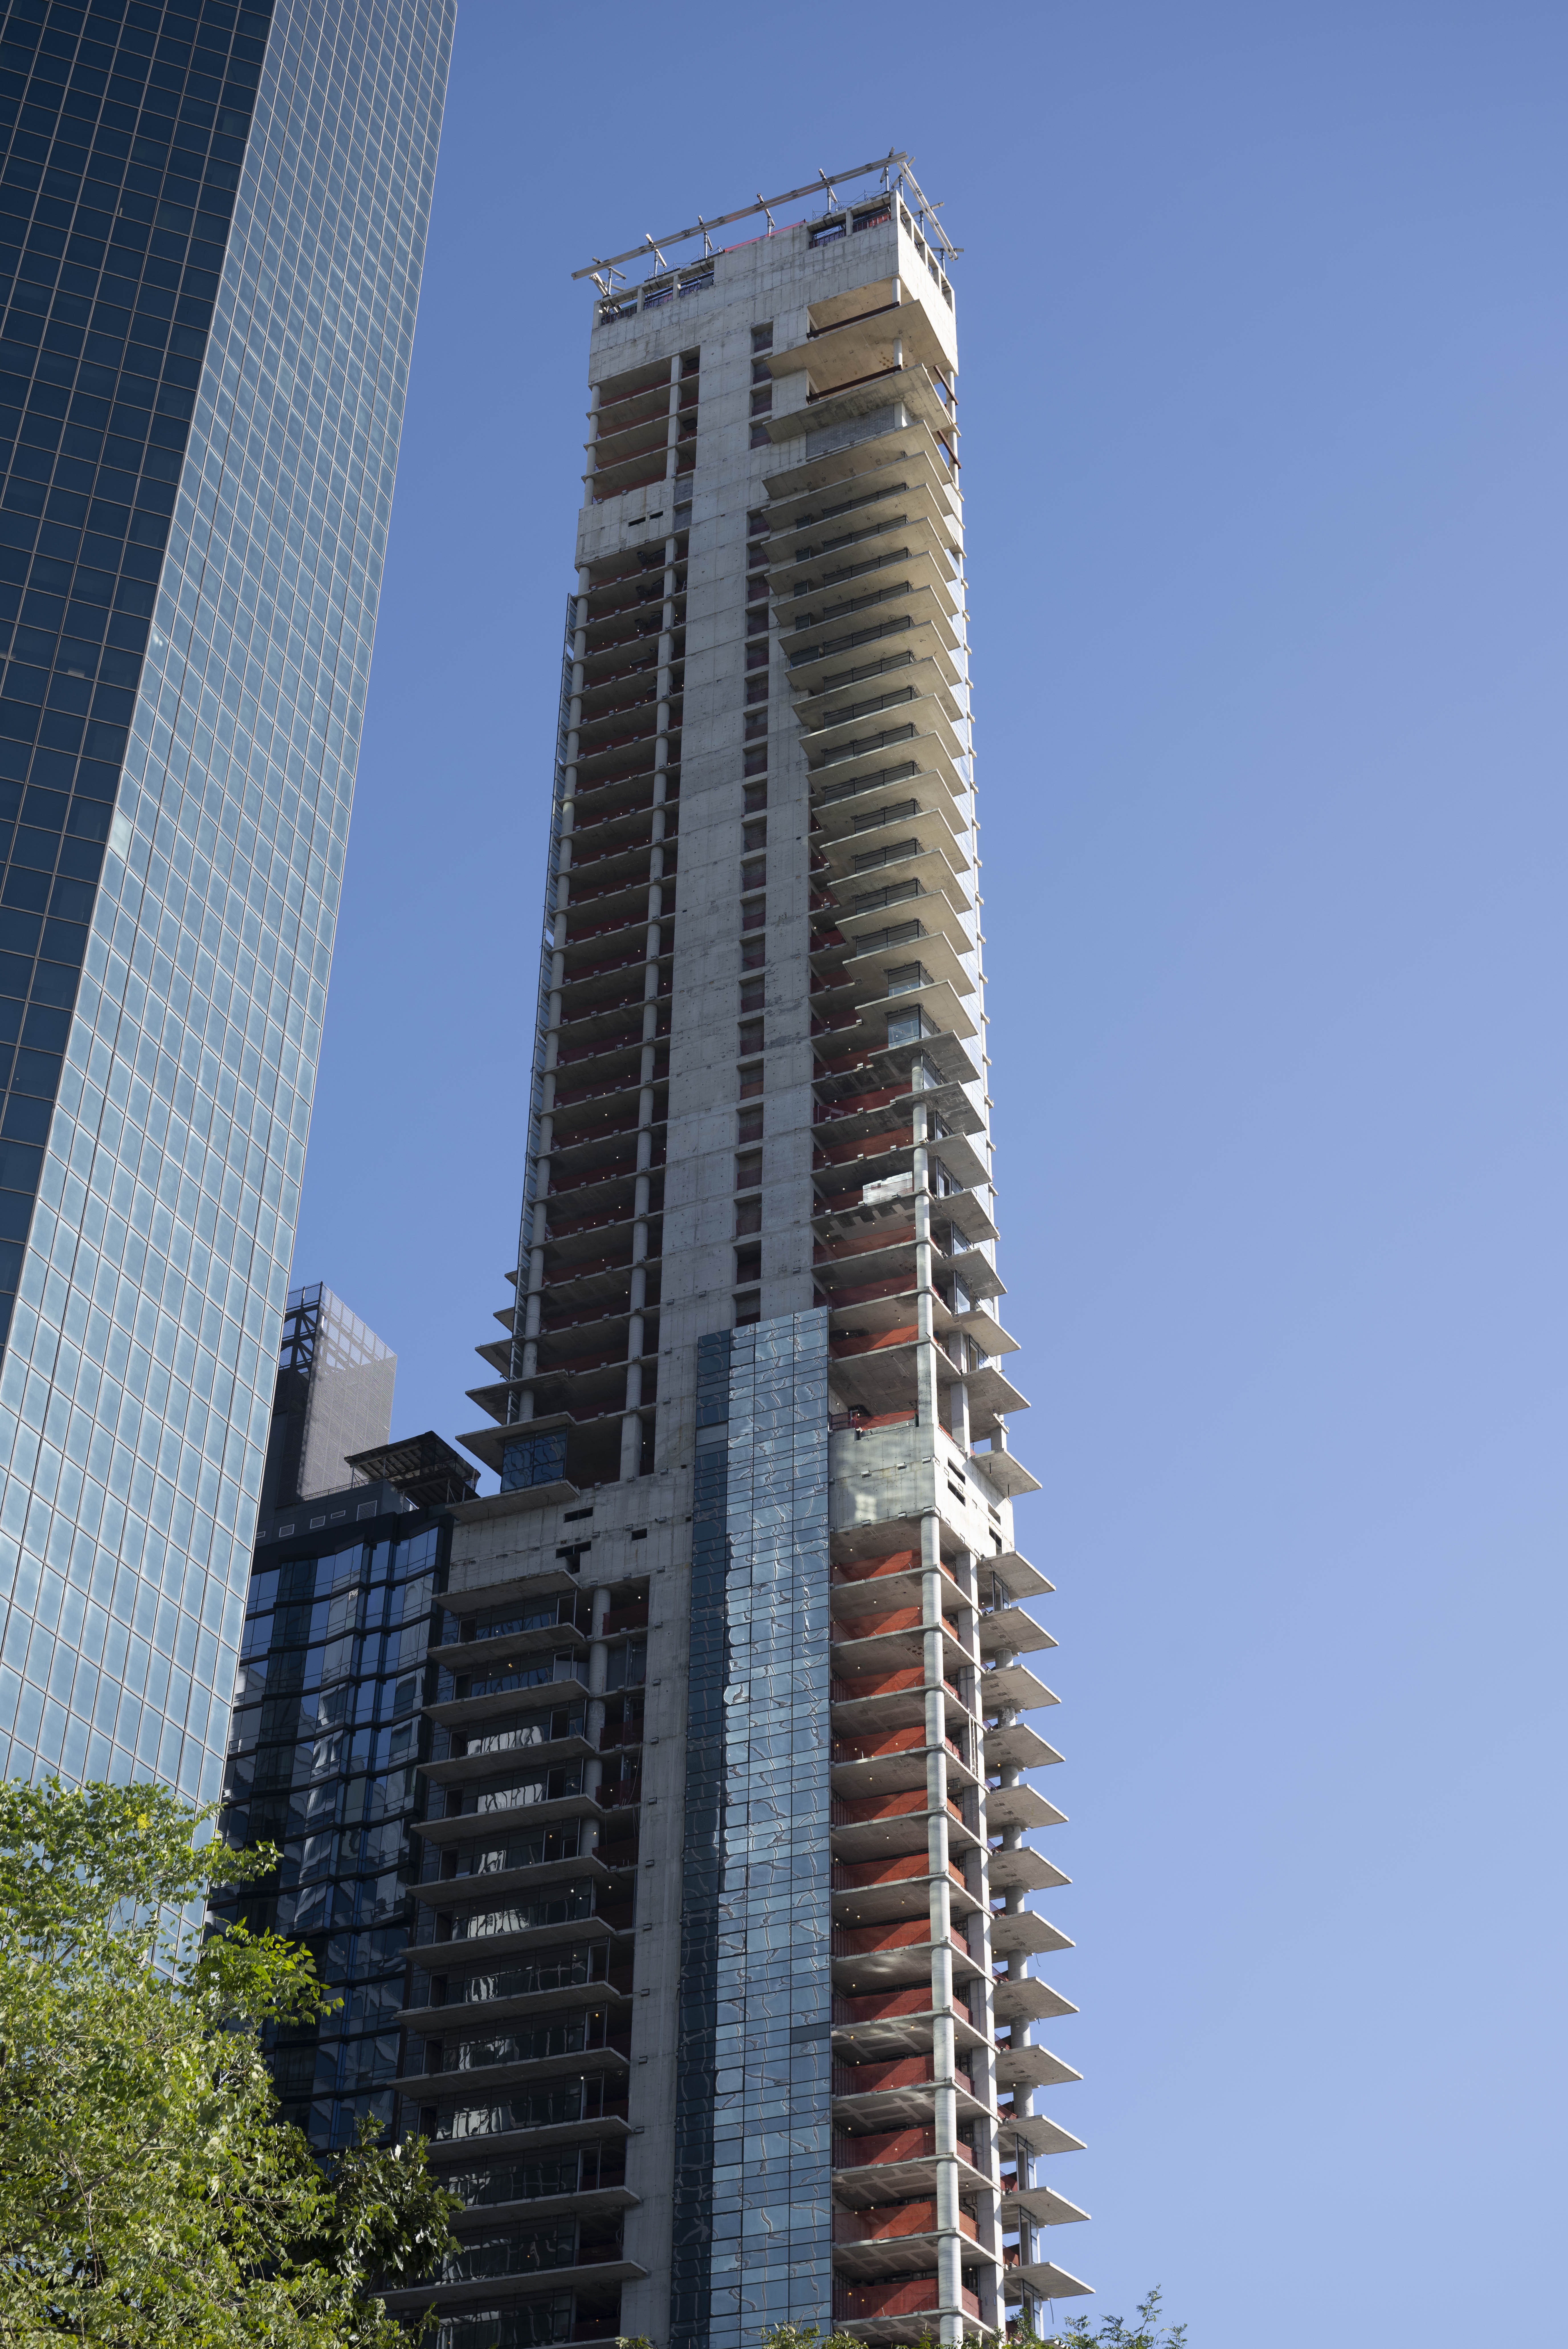 Der 300-Millionen-Dollar-Wolkenkratzer wurde über einen Zeitraum von 10 Jahren in Stop-and-Go-Bauweise gebaut